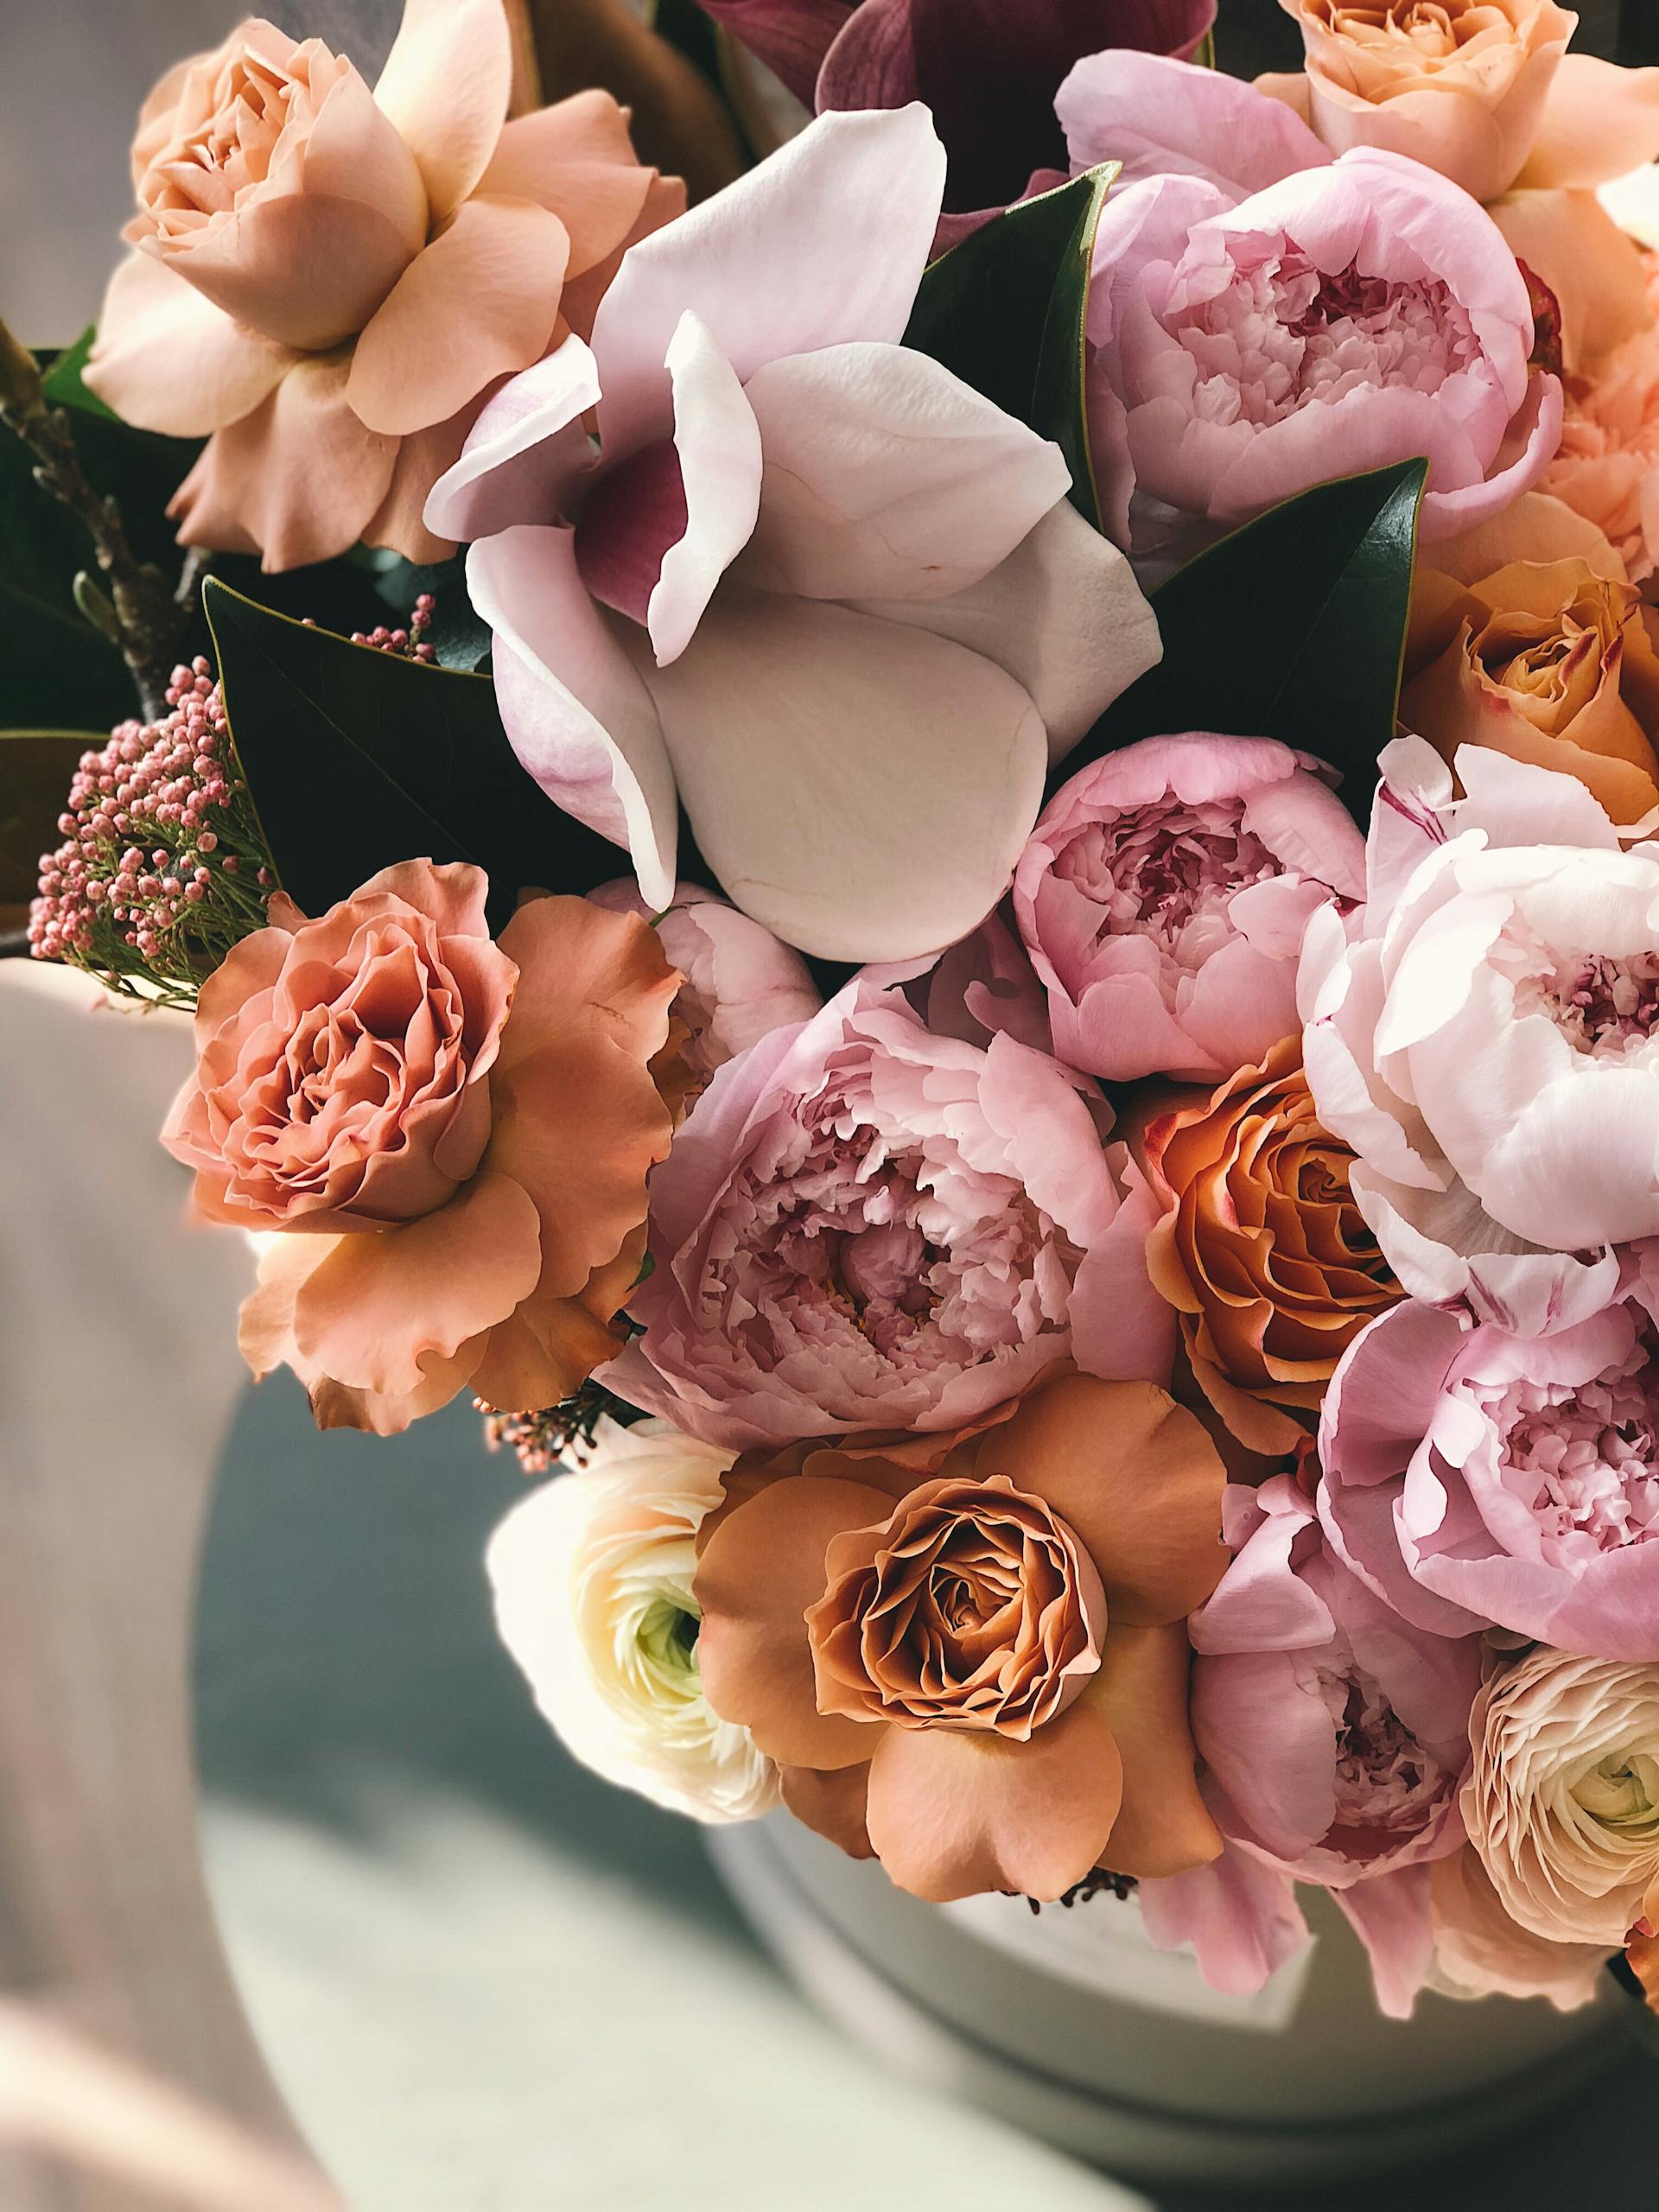 Un arrangement floral pour un mariage | Source : Pexels